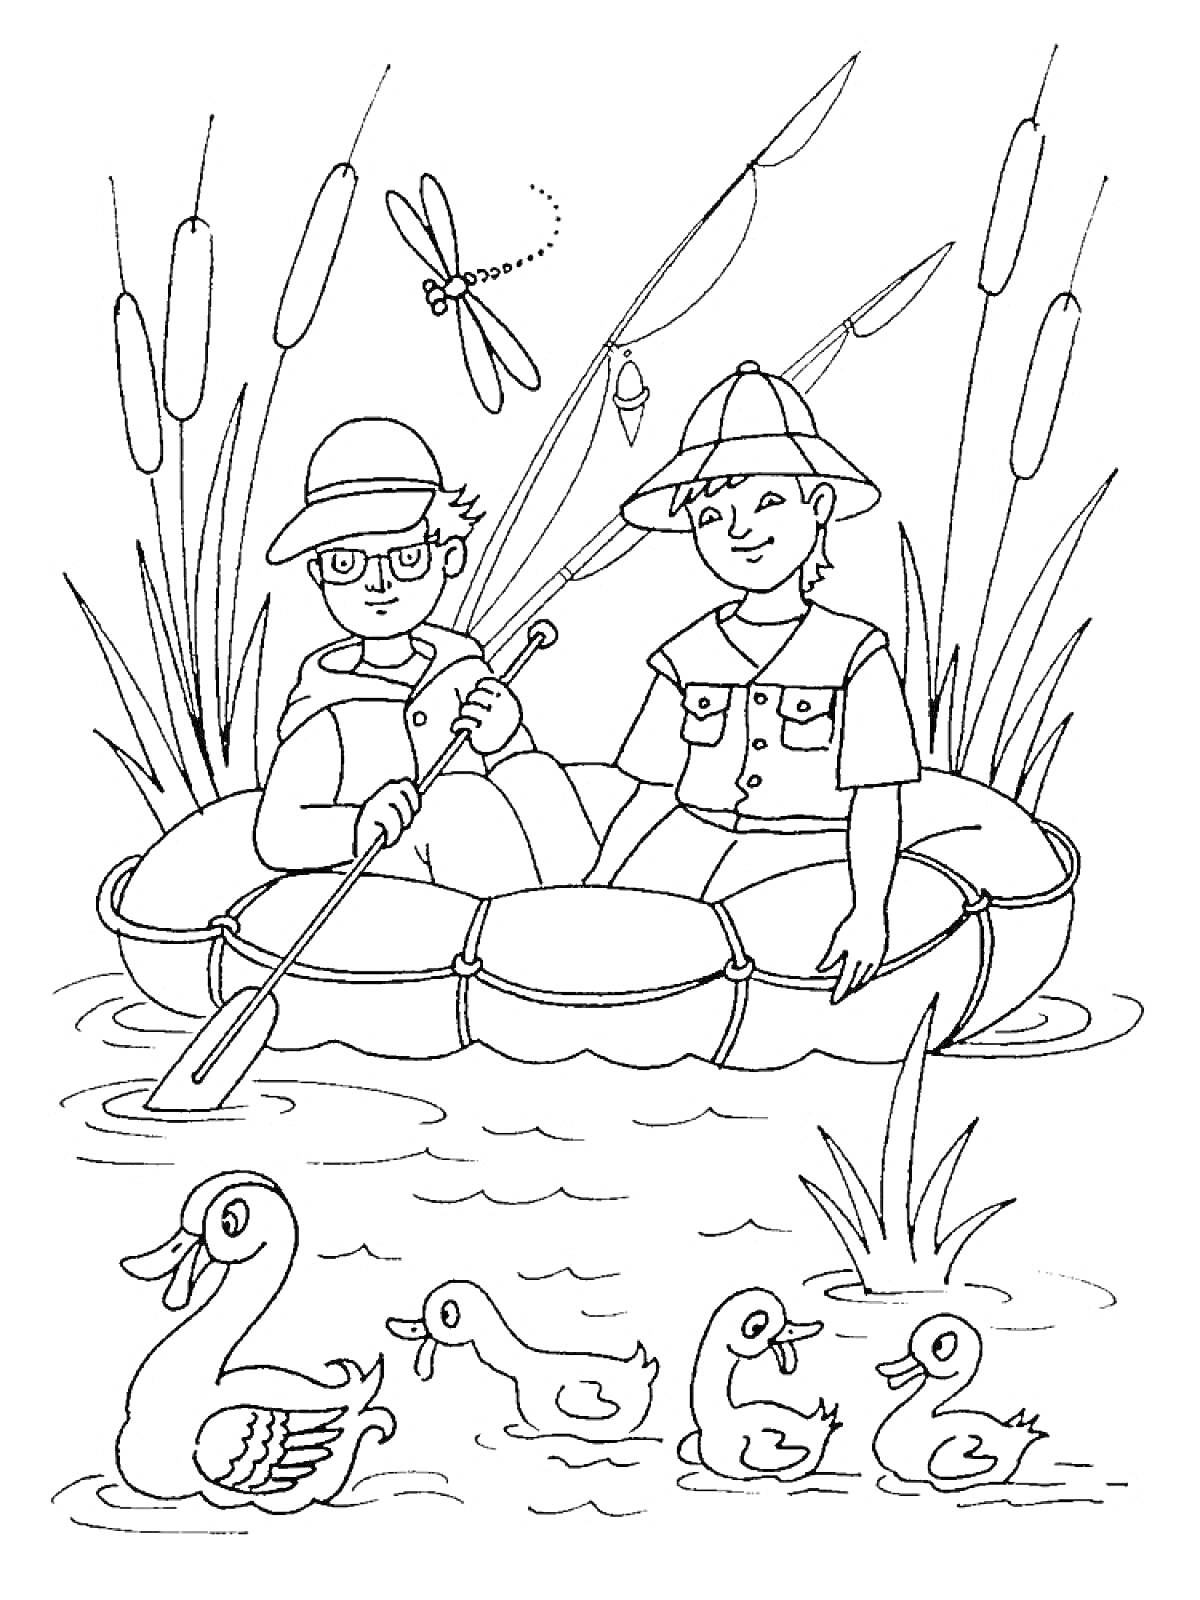 Раскраска Дети в лодке на озере с утками и стрекозой